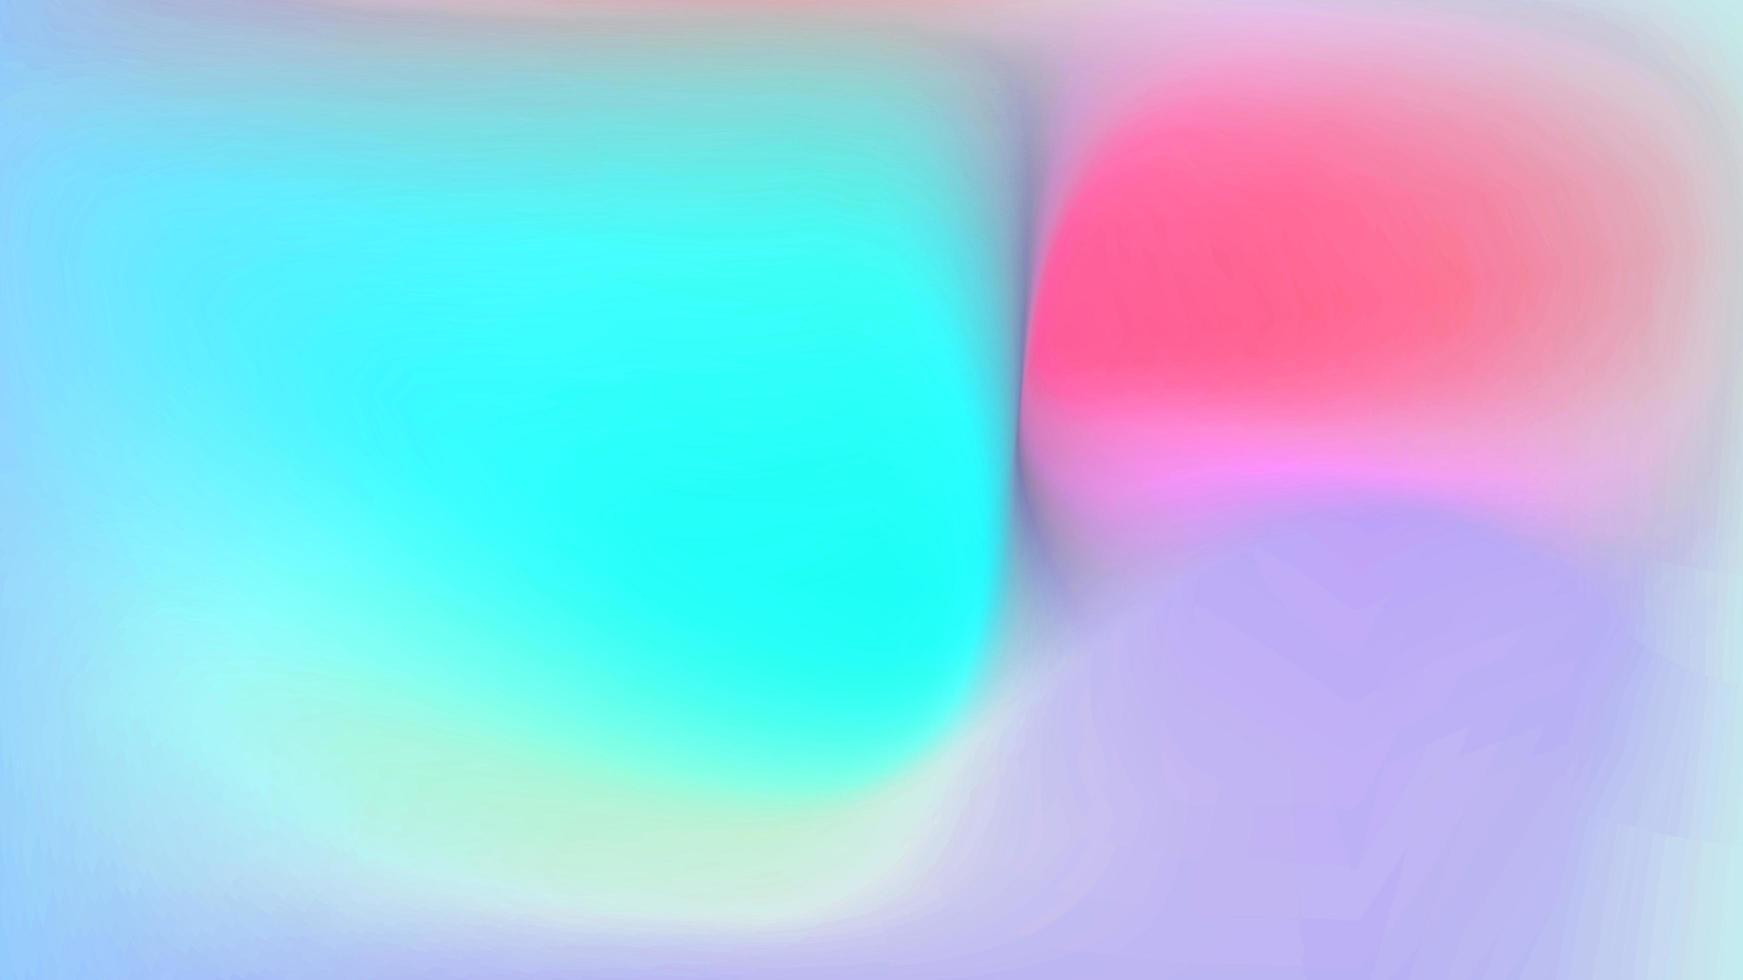 abstracte glanzende lichtblauwe en roze wazig gradiënt bubble cirkel kleurrijke heldere patroon met vloeiende grafische gradiënt op wit. foto